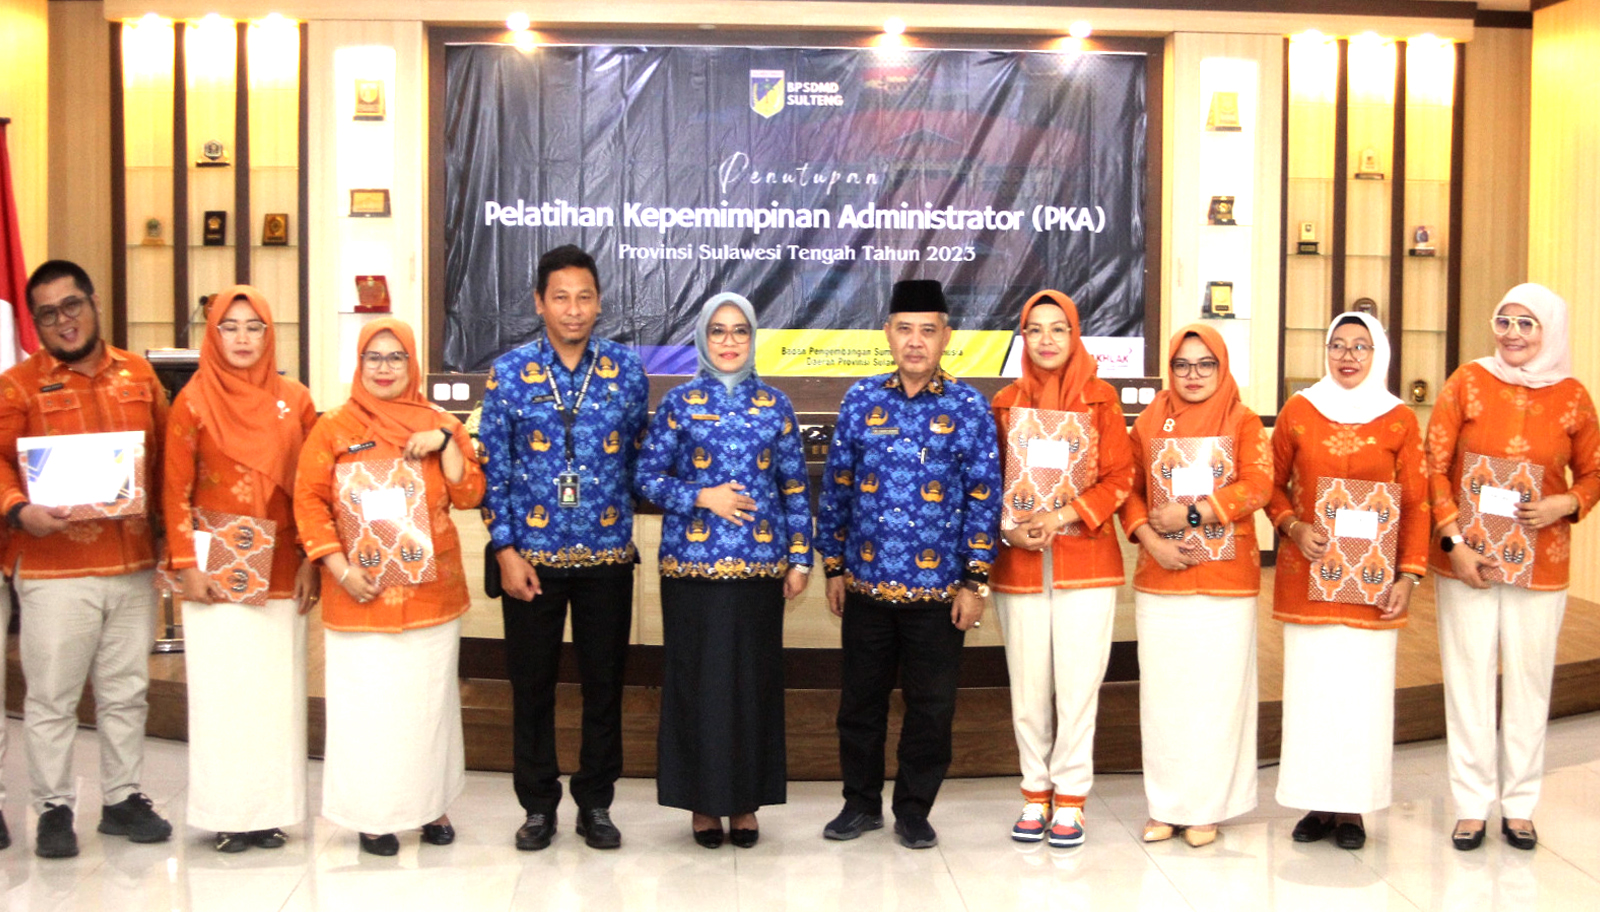 Berakhirnya Kegiatan Pelatihan Kepemimpinan Administrator Angkatan XV ditandai dengan Penyerahan Sertifikat oleh Gubernur Sulawesi Tengah yang diwakili oleh Sekretaris Provinsi Sulawesi Tengah Ibu Dra. Novalina, MM.